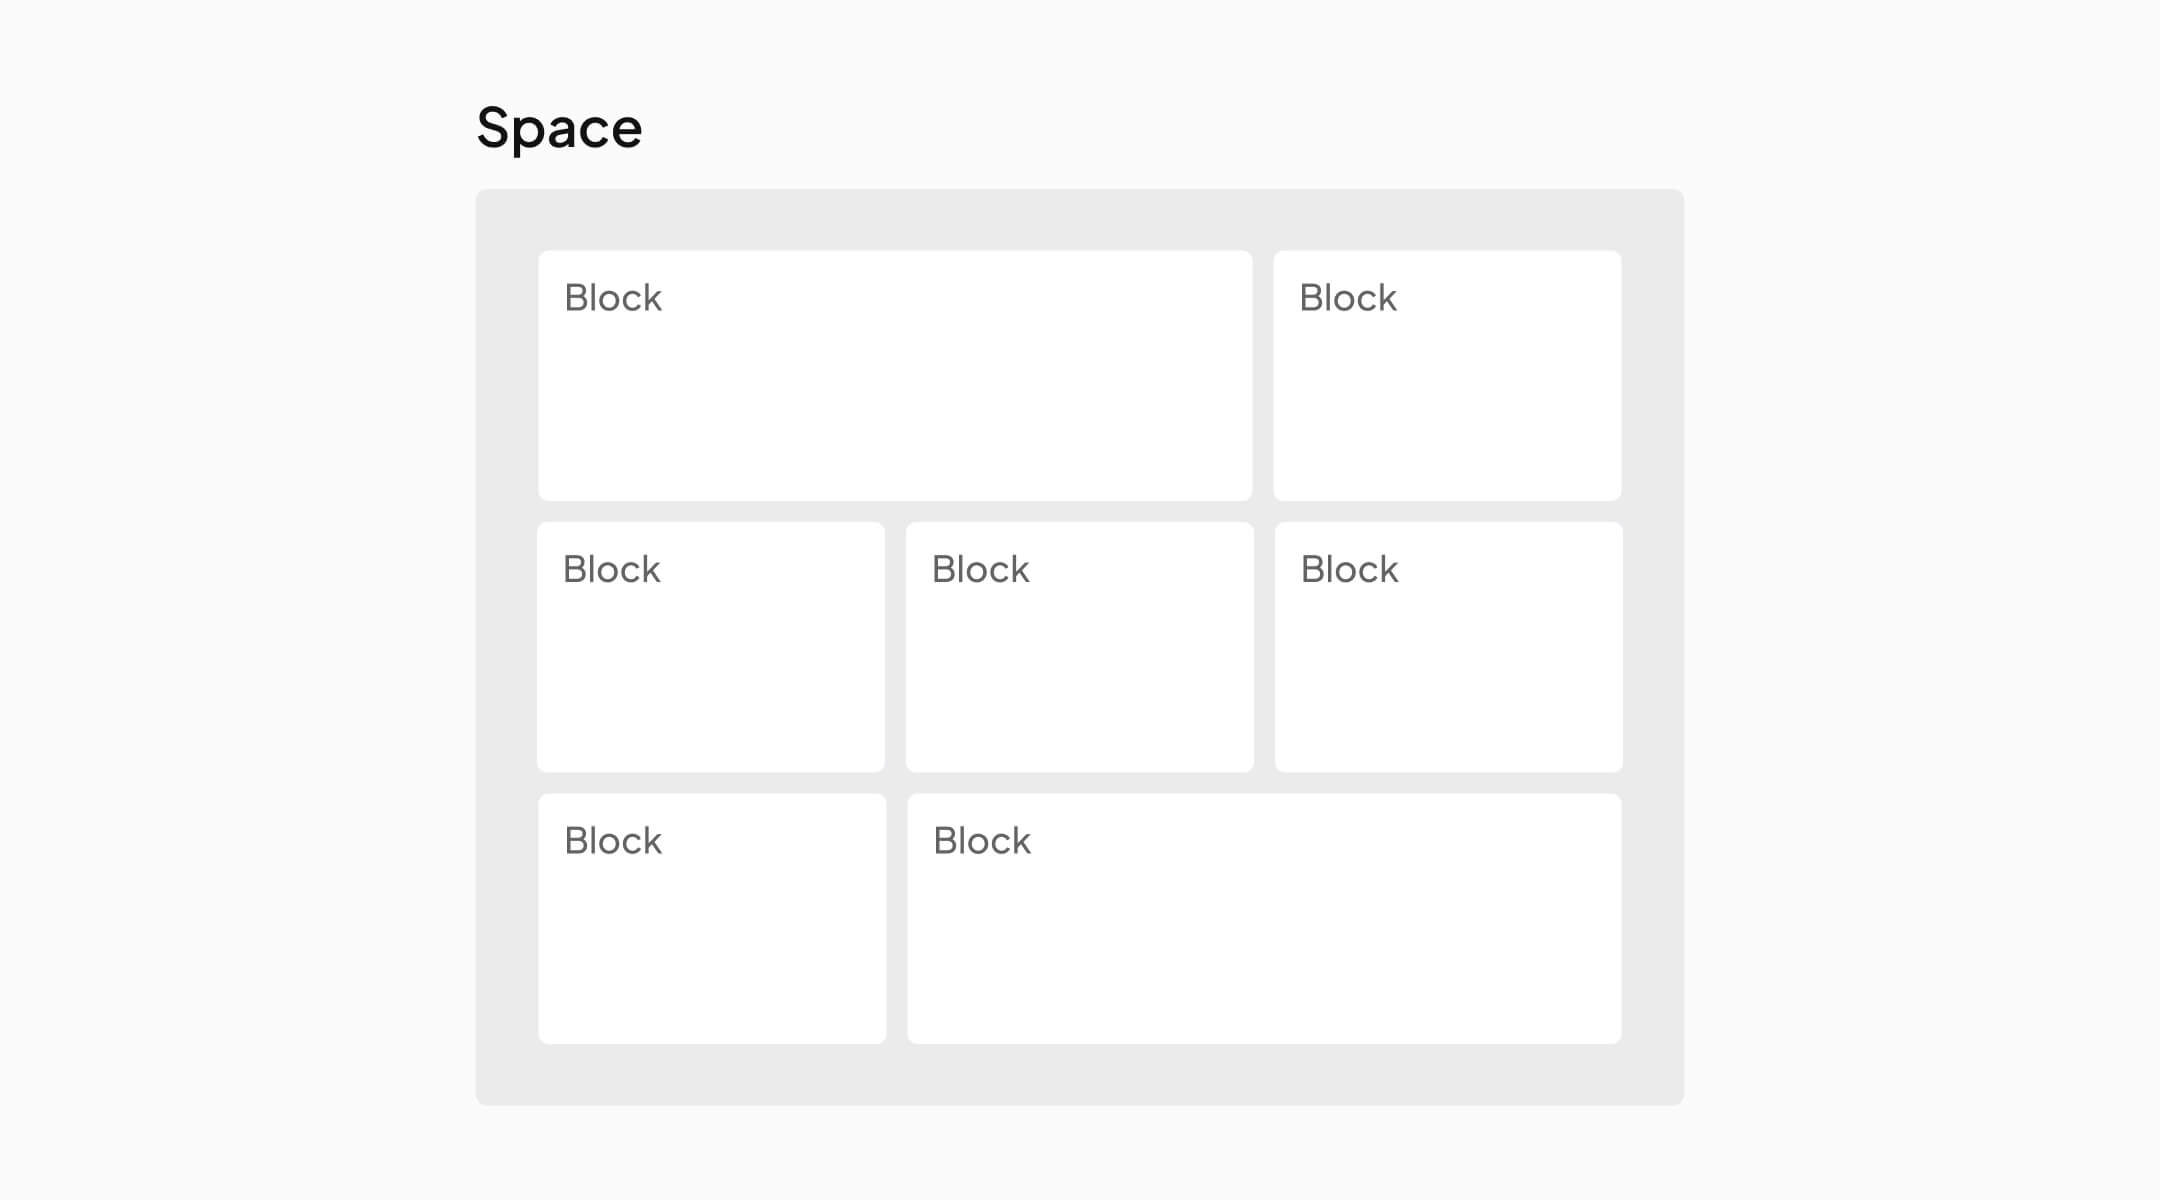 Seven blocks inside a space